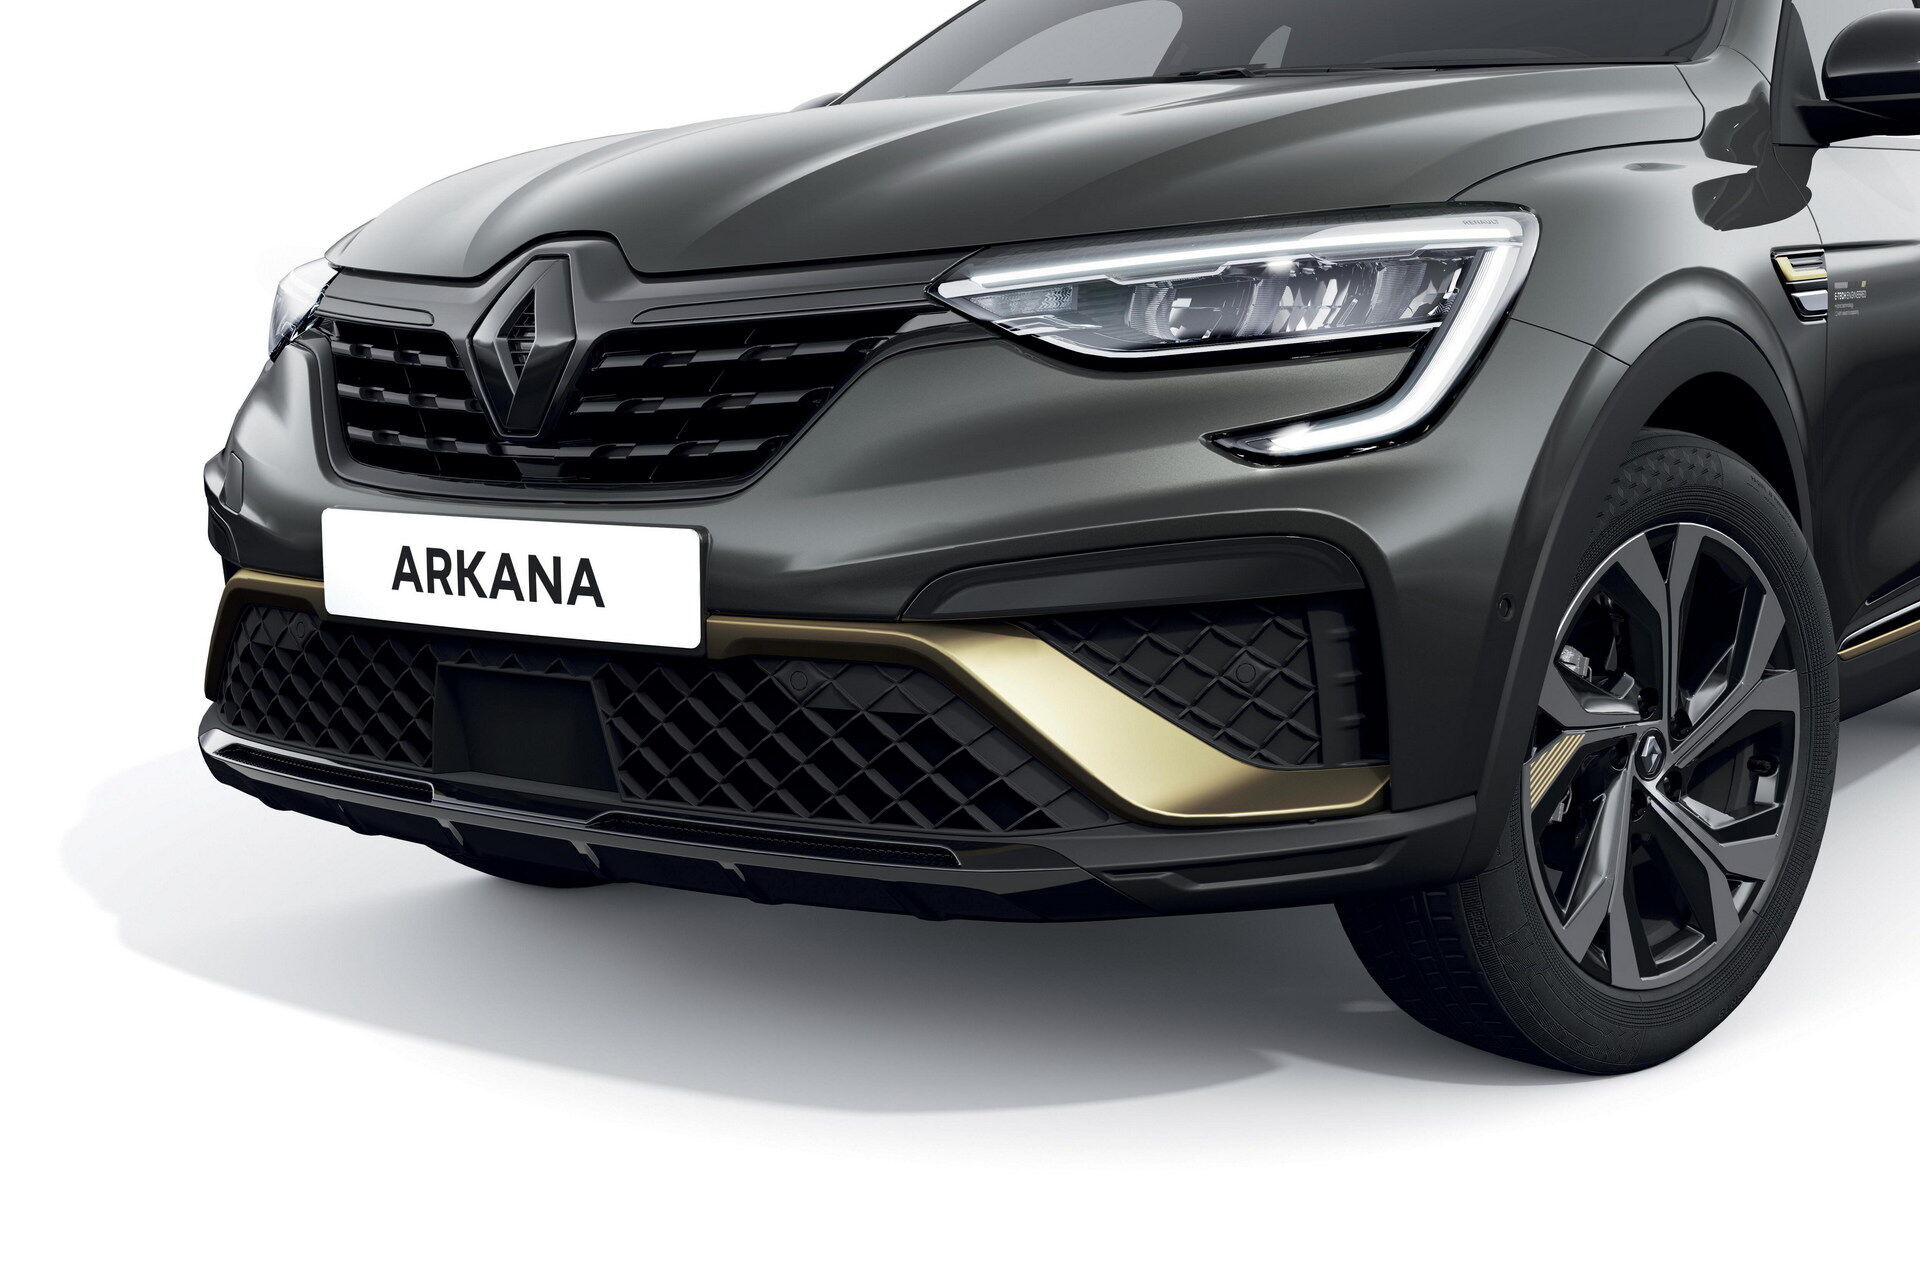 Для контрасту емблеми Renault, літерні написи, облицювання радіатора та елементи бамперів будуть забарвлені у чорний колір